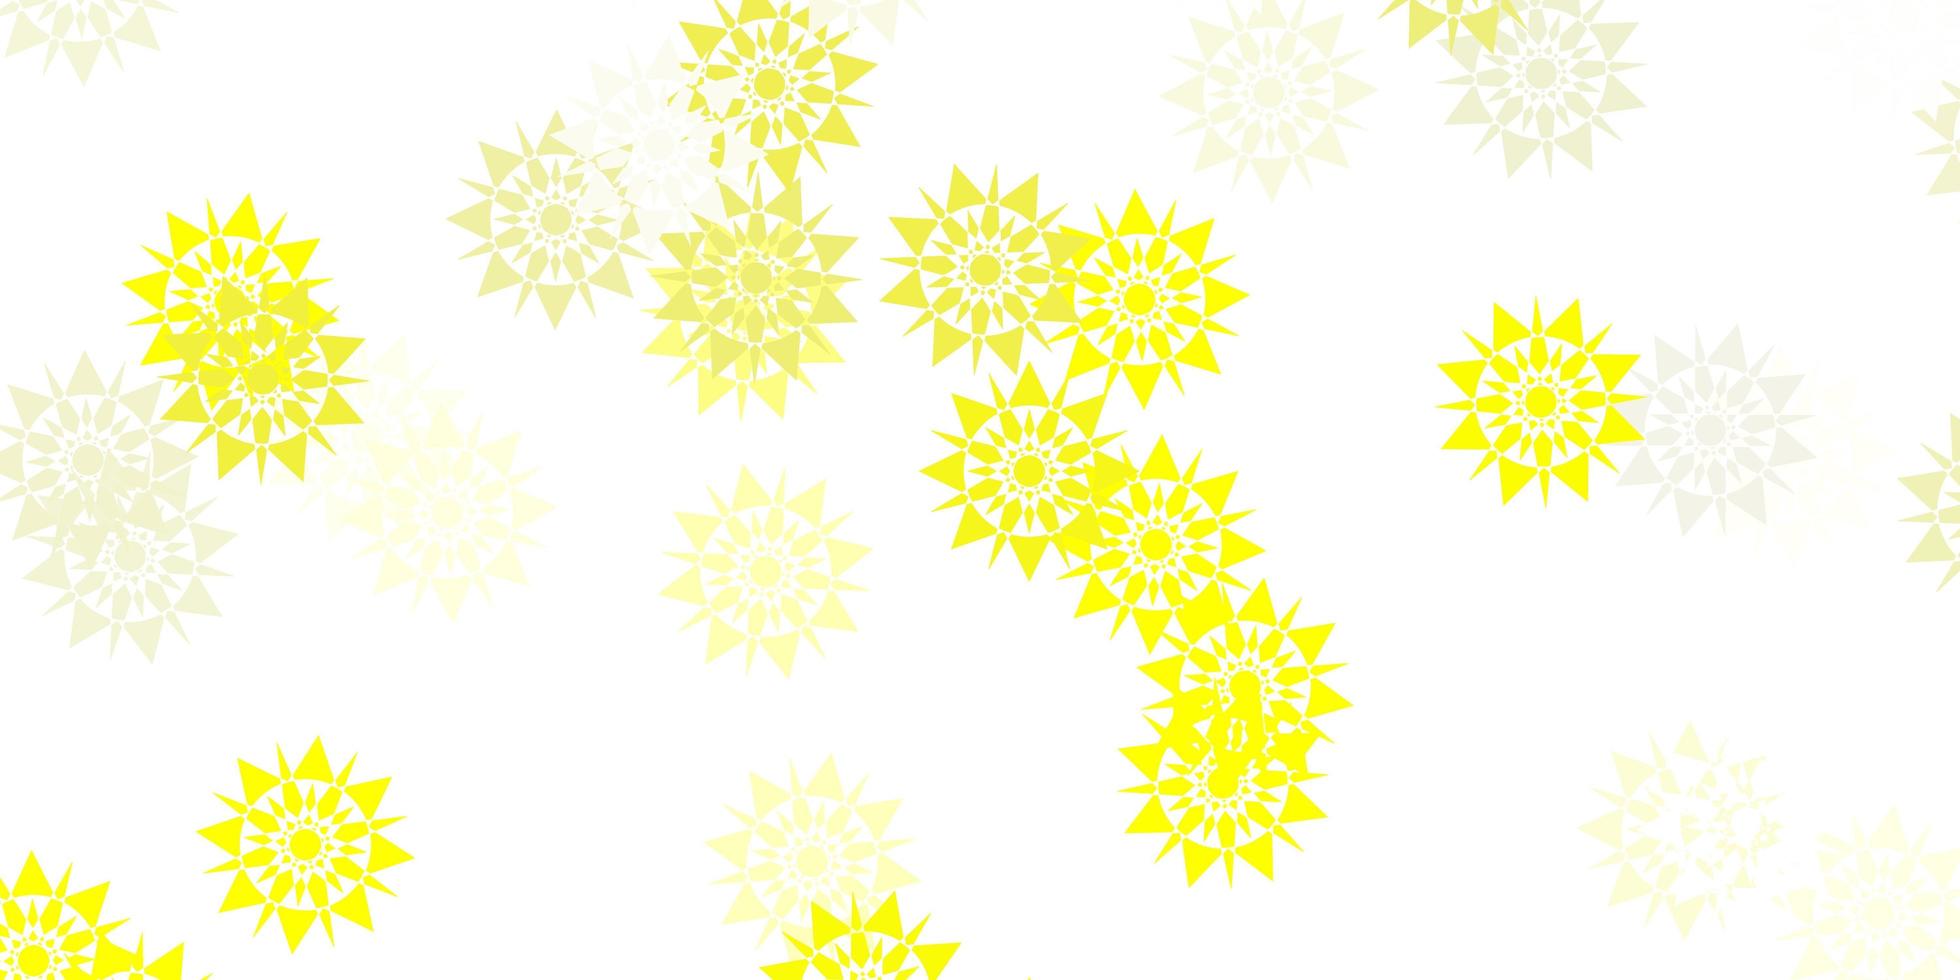 modello vettoriale giallo chiaro con fiocchi di neve colorati.